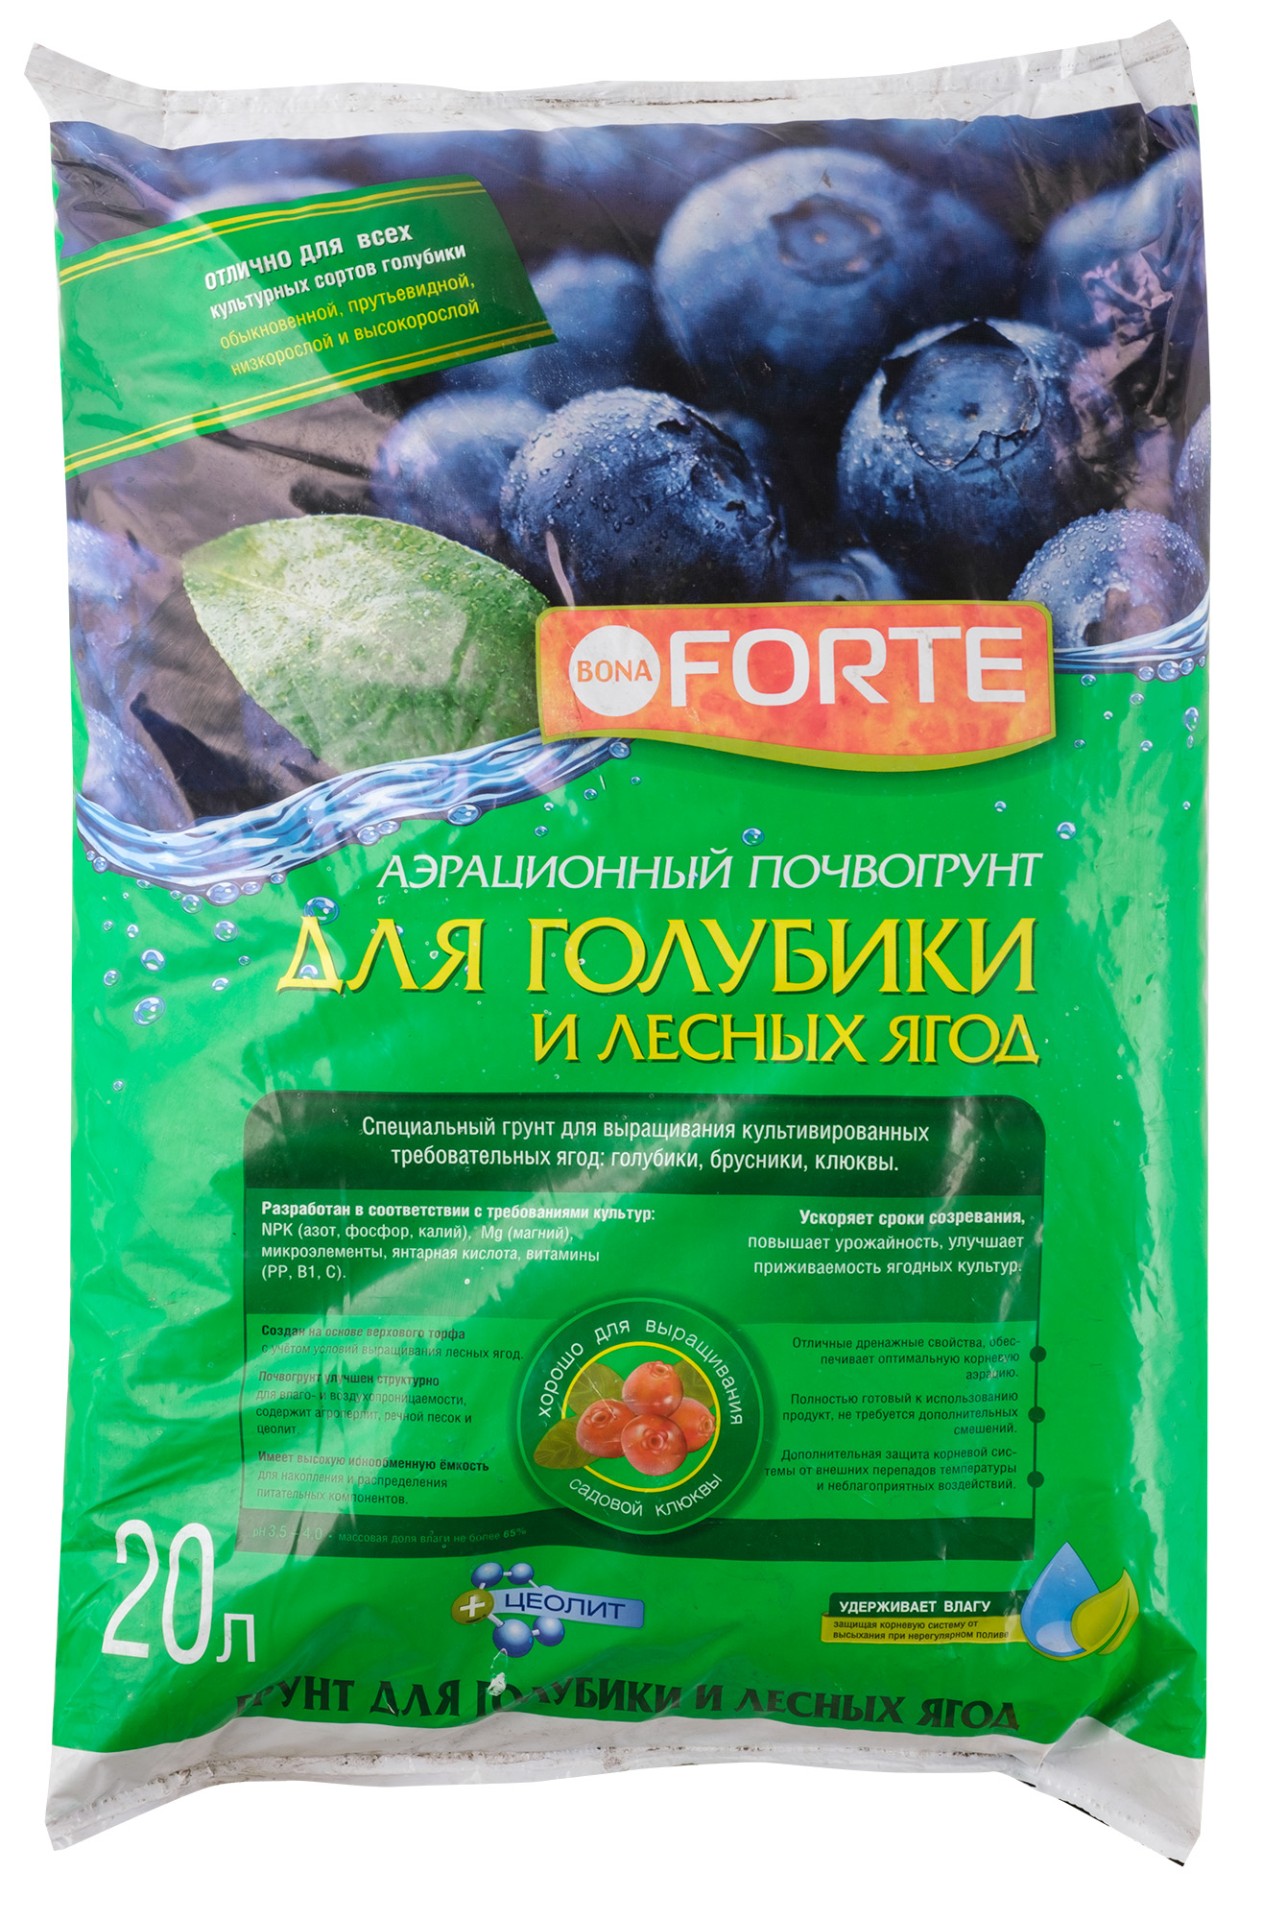 Грунт для голубики и лесных ягод БФ 20л купить с доставкой в МЕГАСТРОЙСаранск